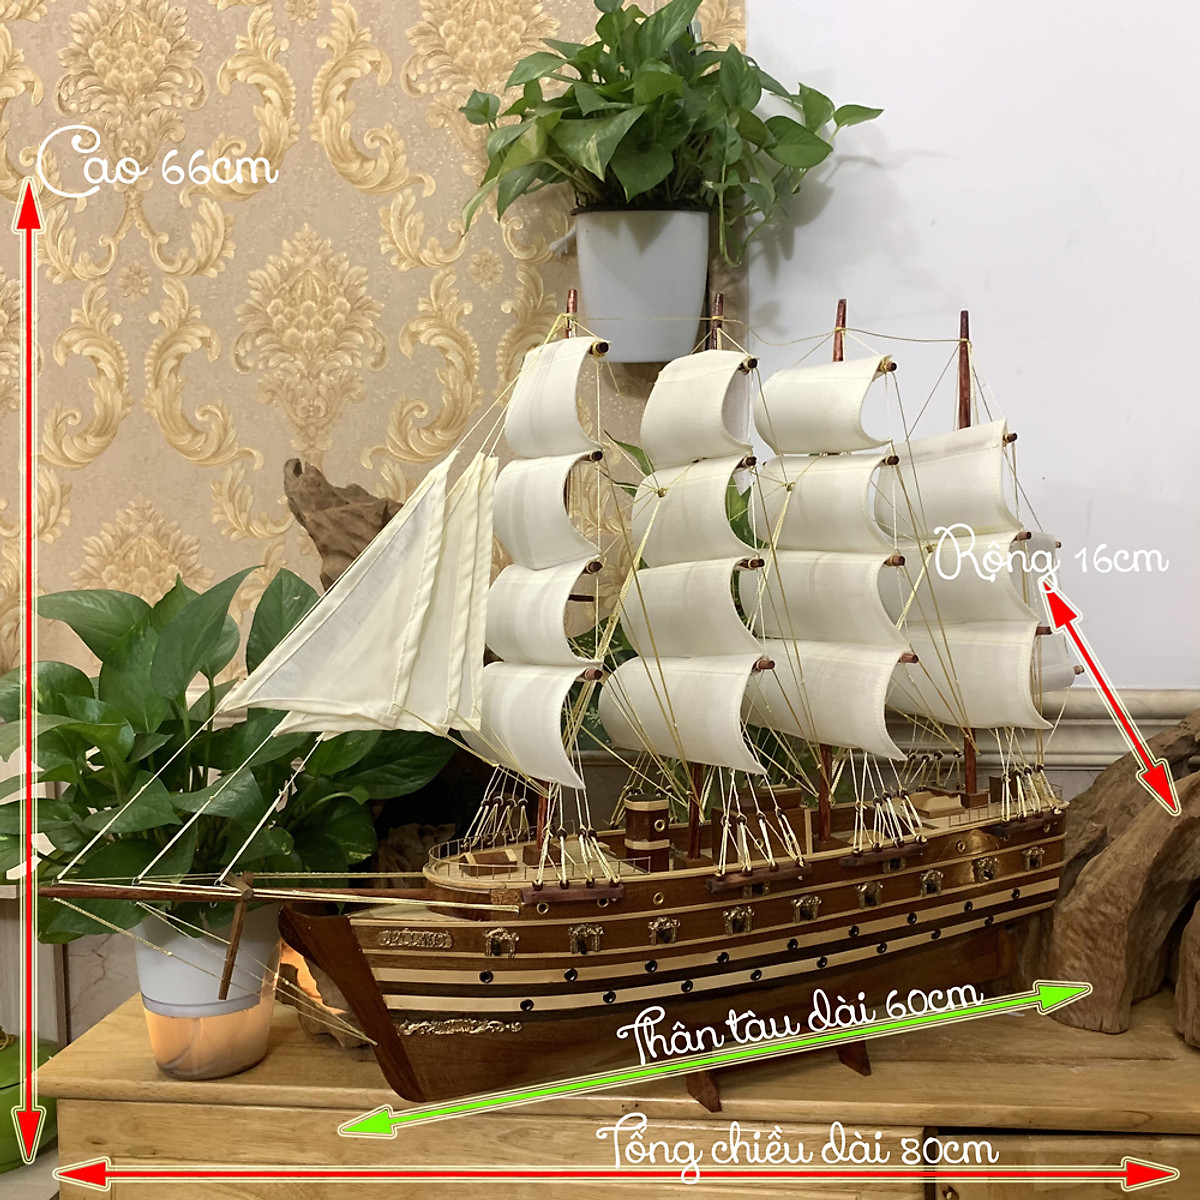 Mua Mô hình thuyền gỗ thuyền trang trí tàu chiến cổ JYLLAND_Đan ...